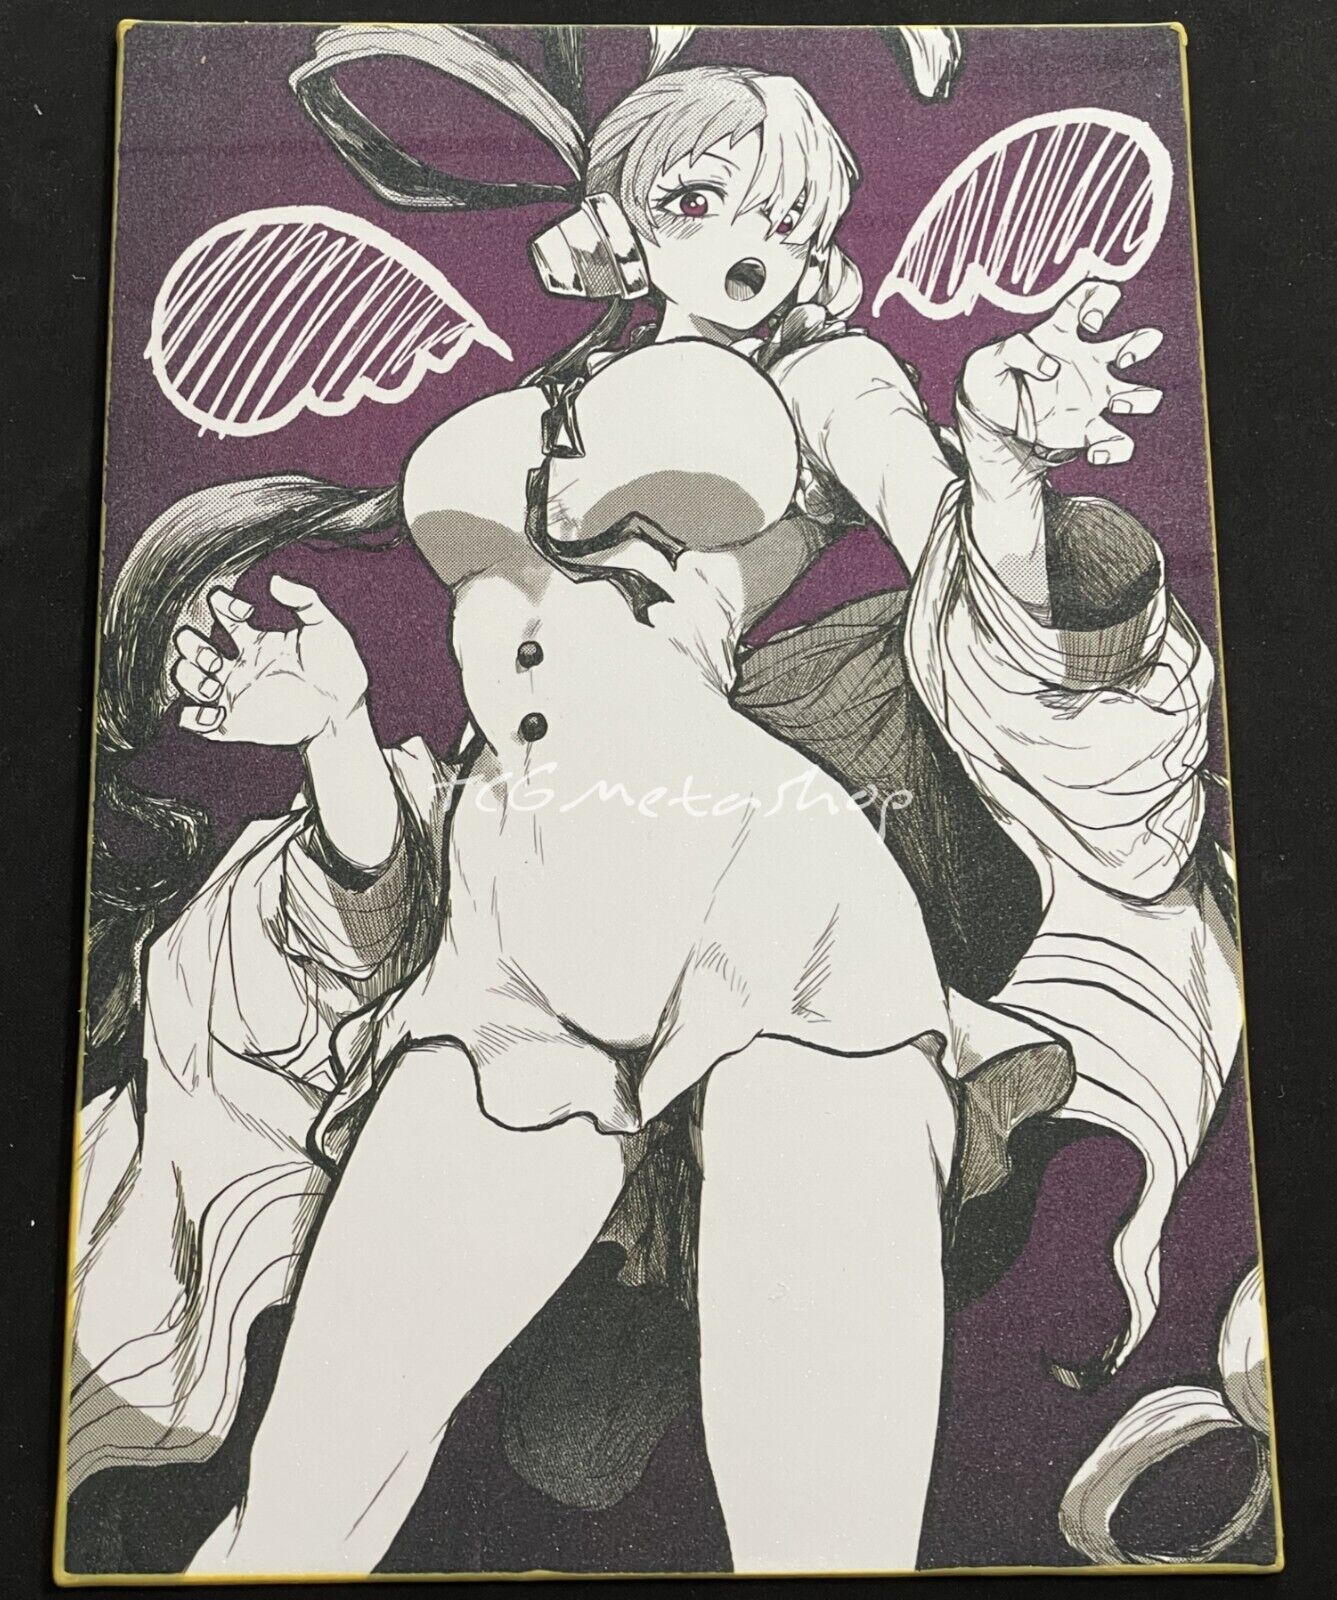 🔥 Uta One Piece Goddess Story Anime Waifu A4 Card SP 14 🔥